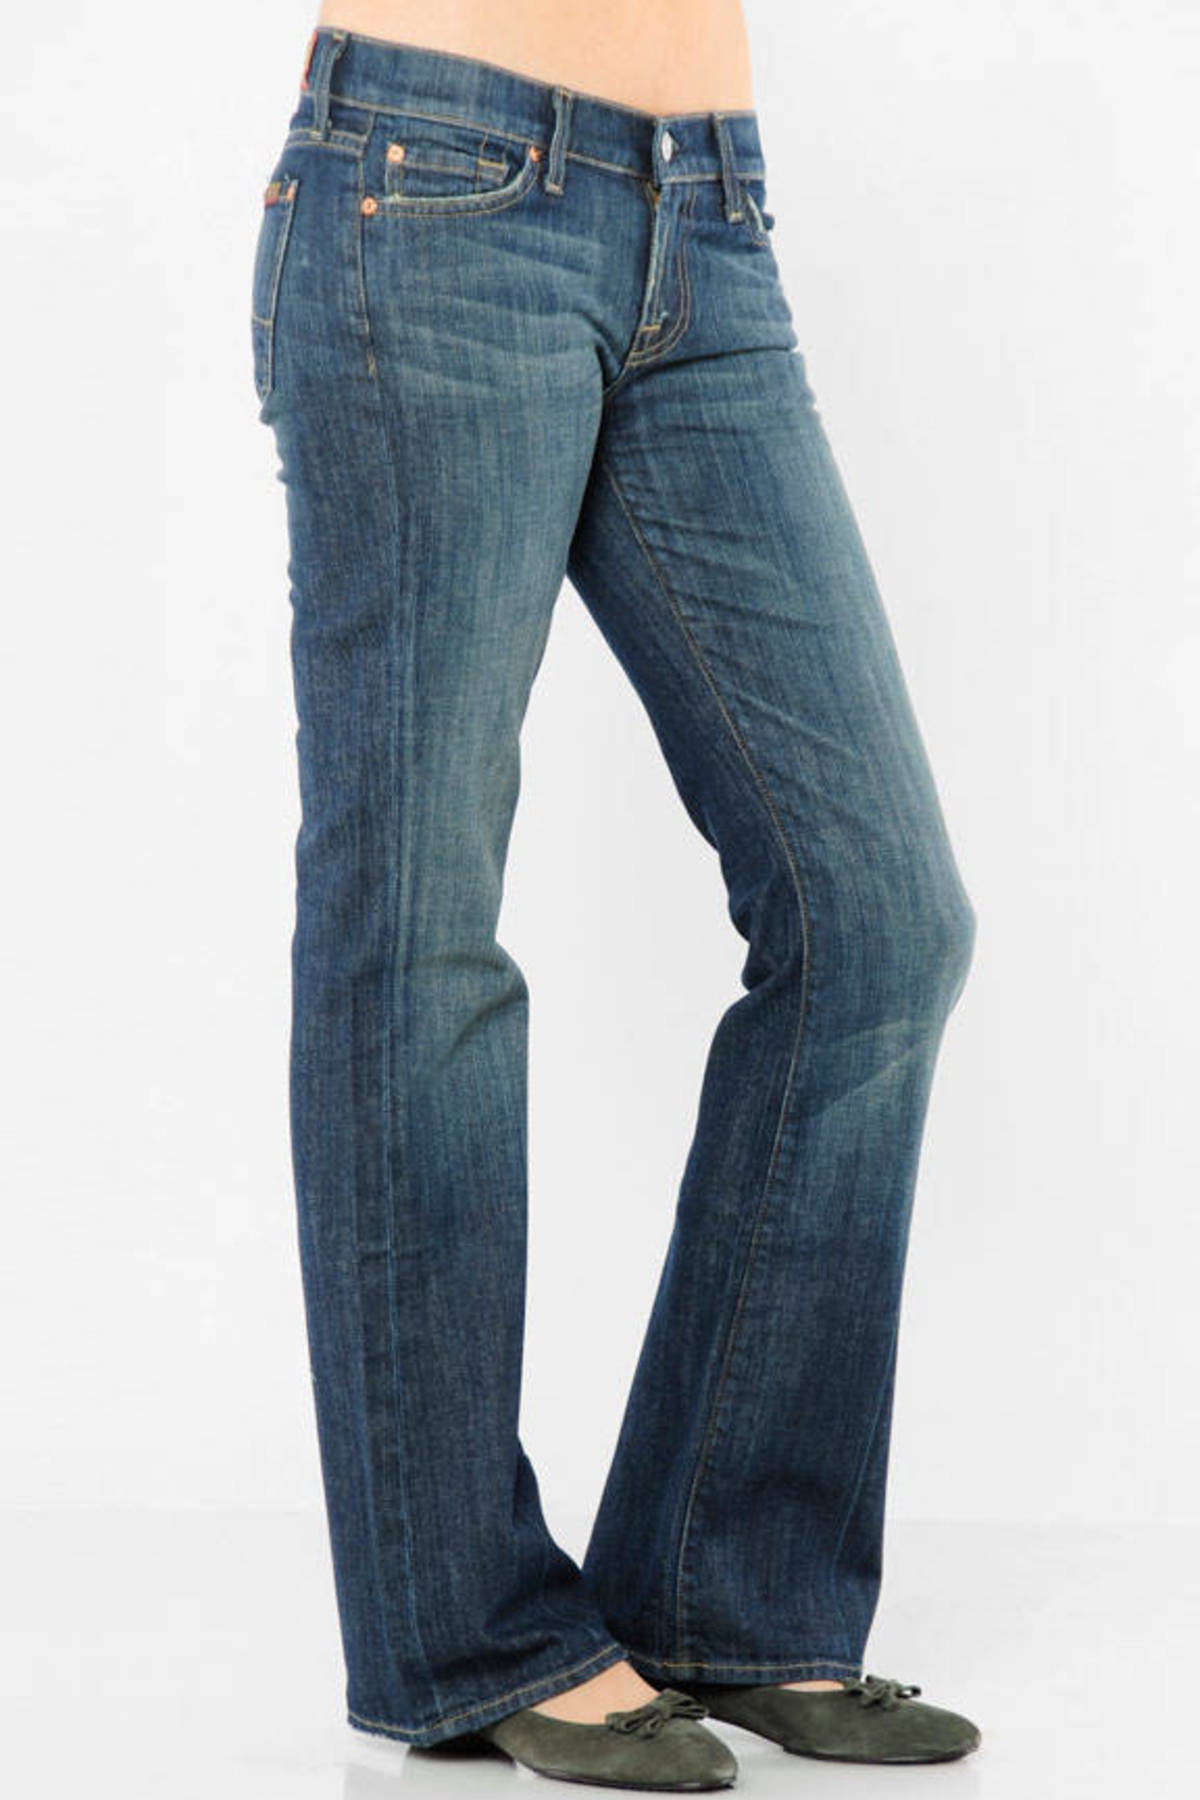 Bootcut Short Flip Flop Jeans in New York Dark - $46 | Tobi US